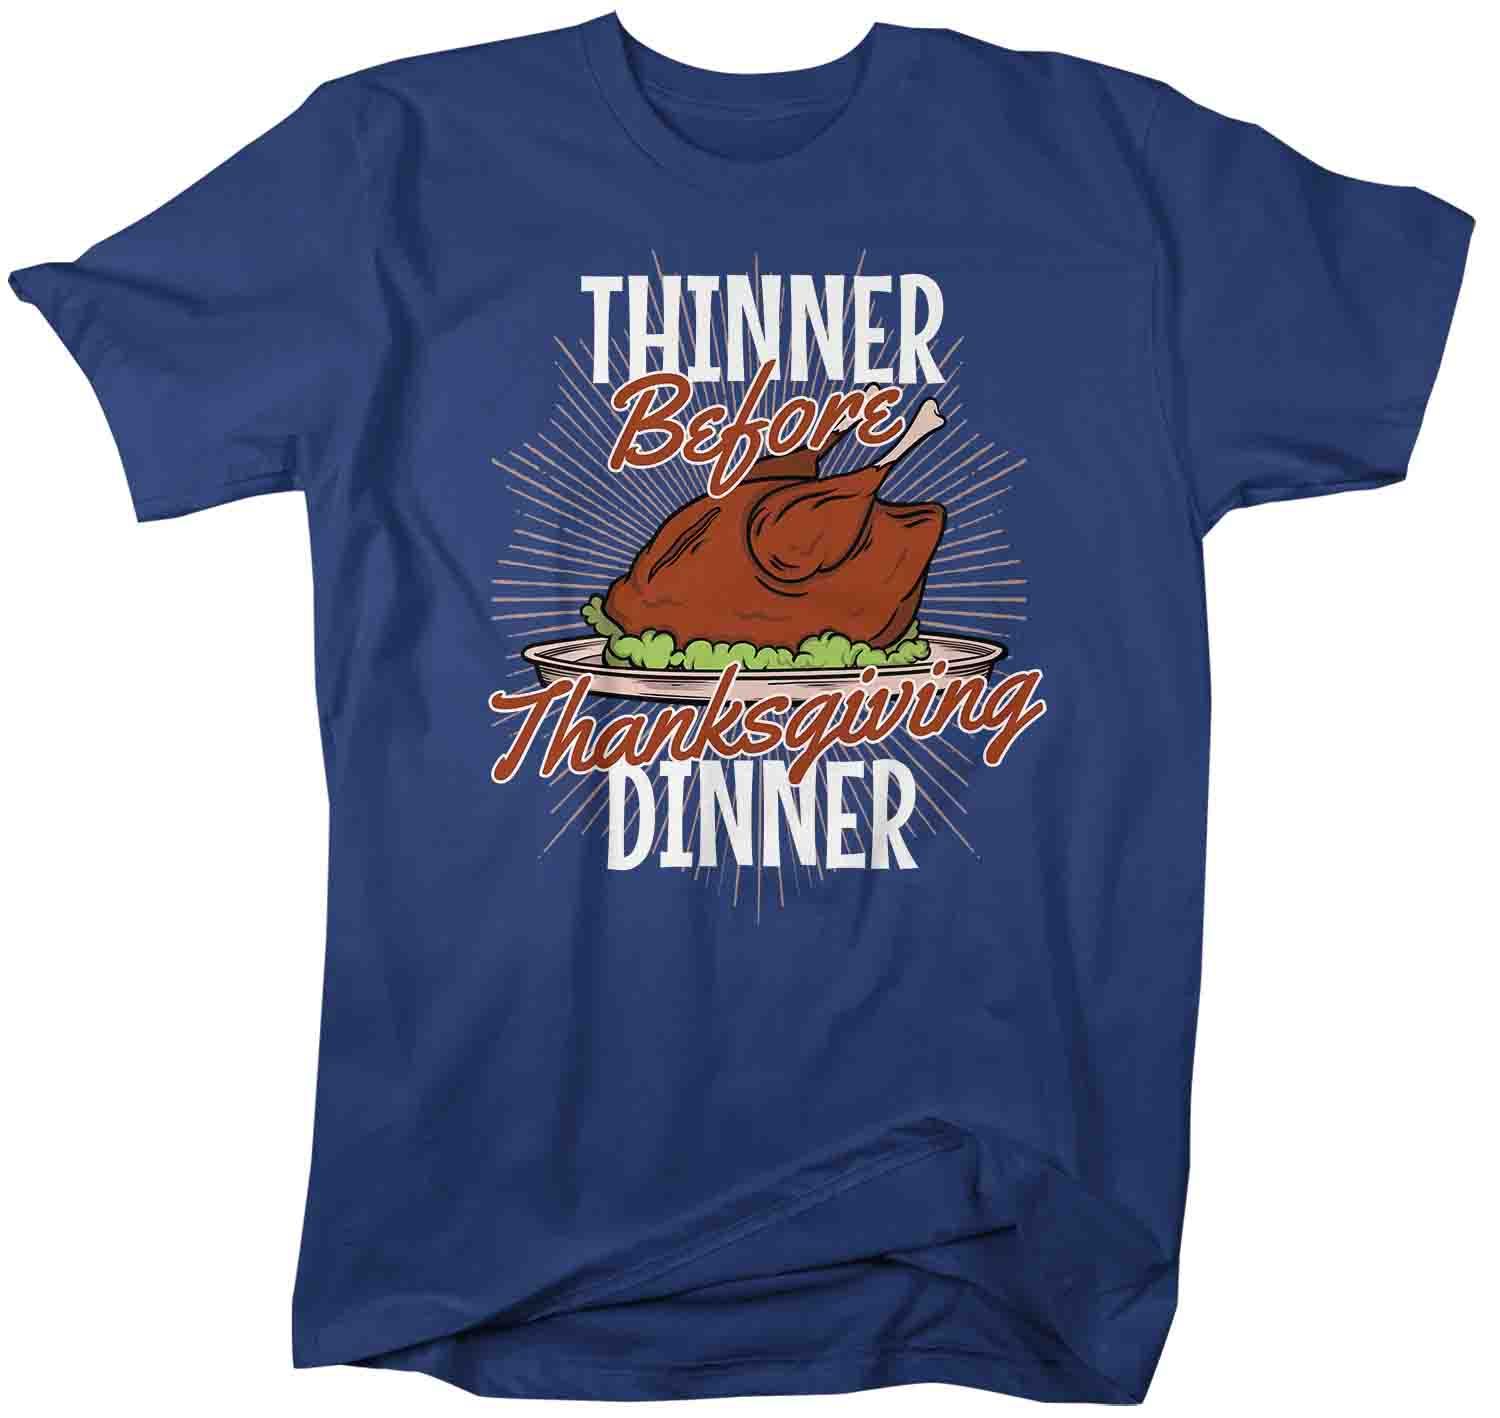 Men's Funny Thanksgiving T Shirt Thinner Before Dinner Shirt